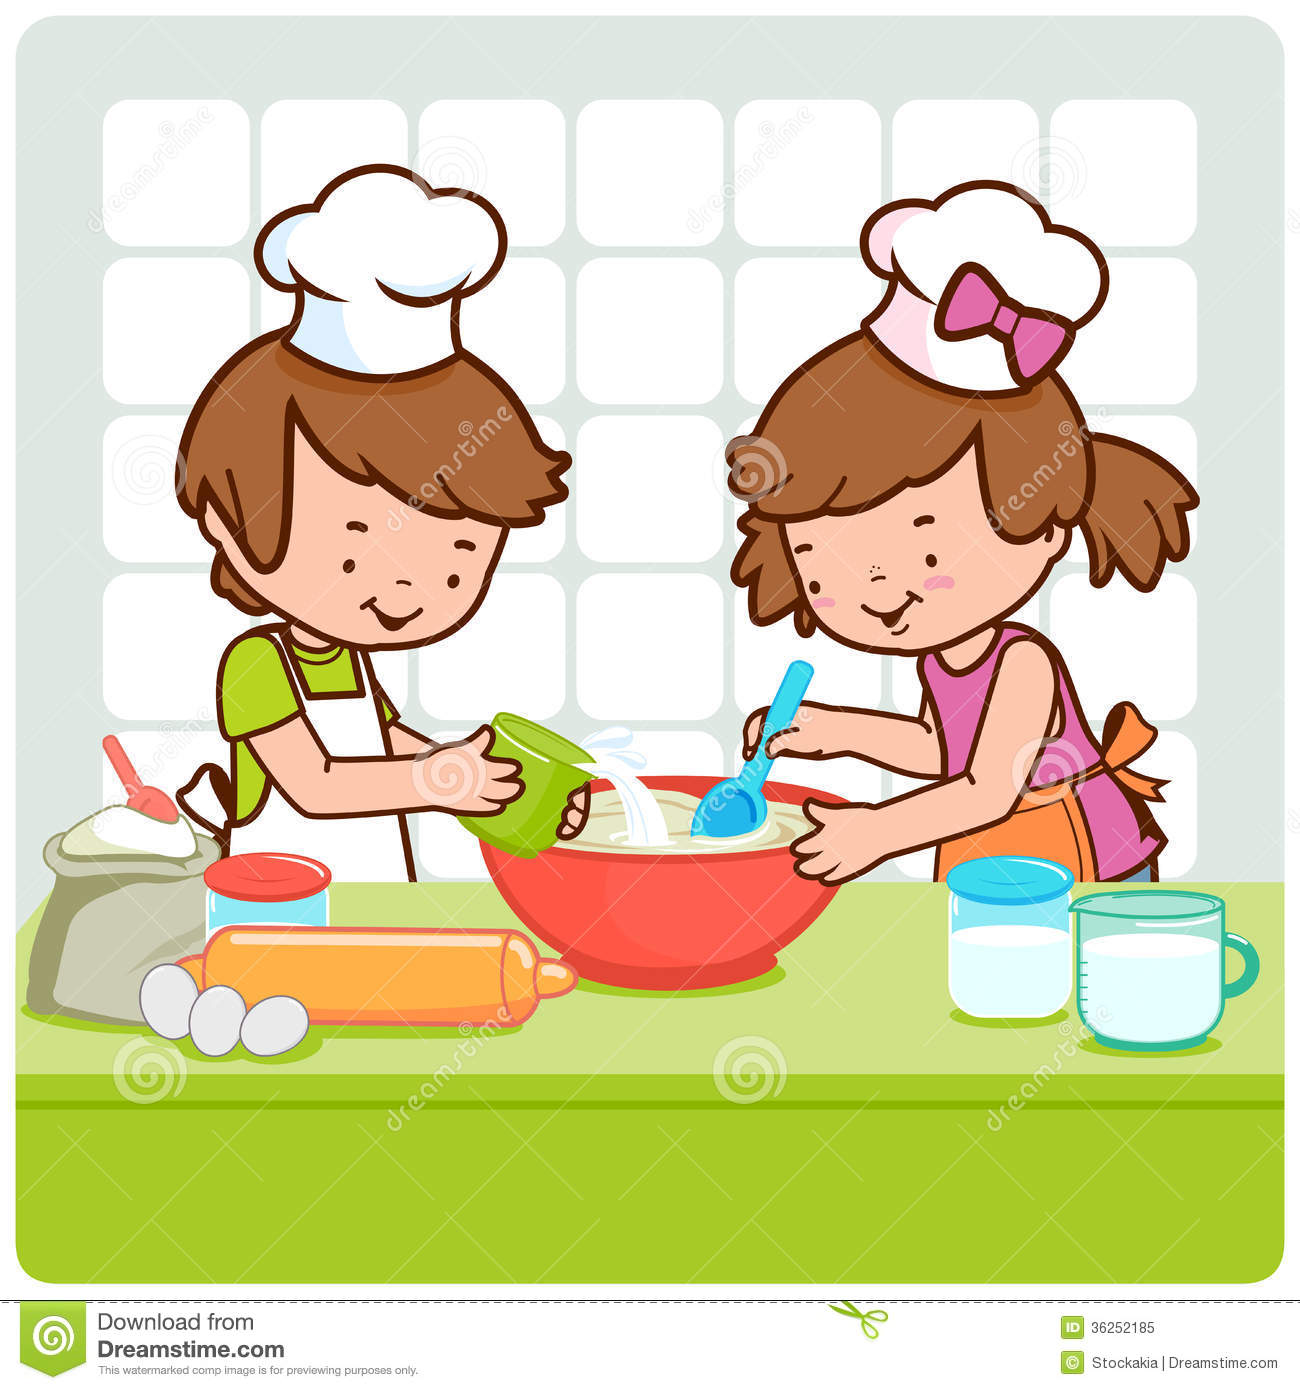 children cooking: illustratio